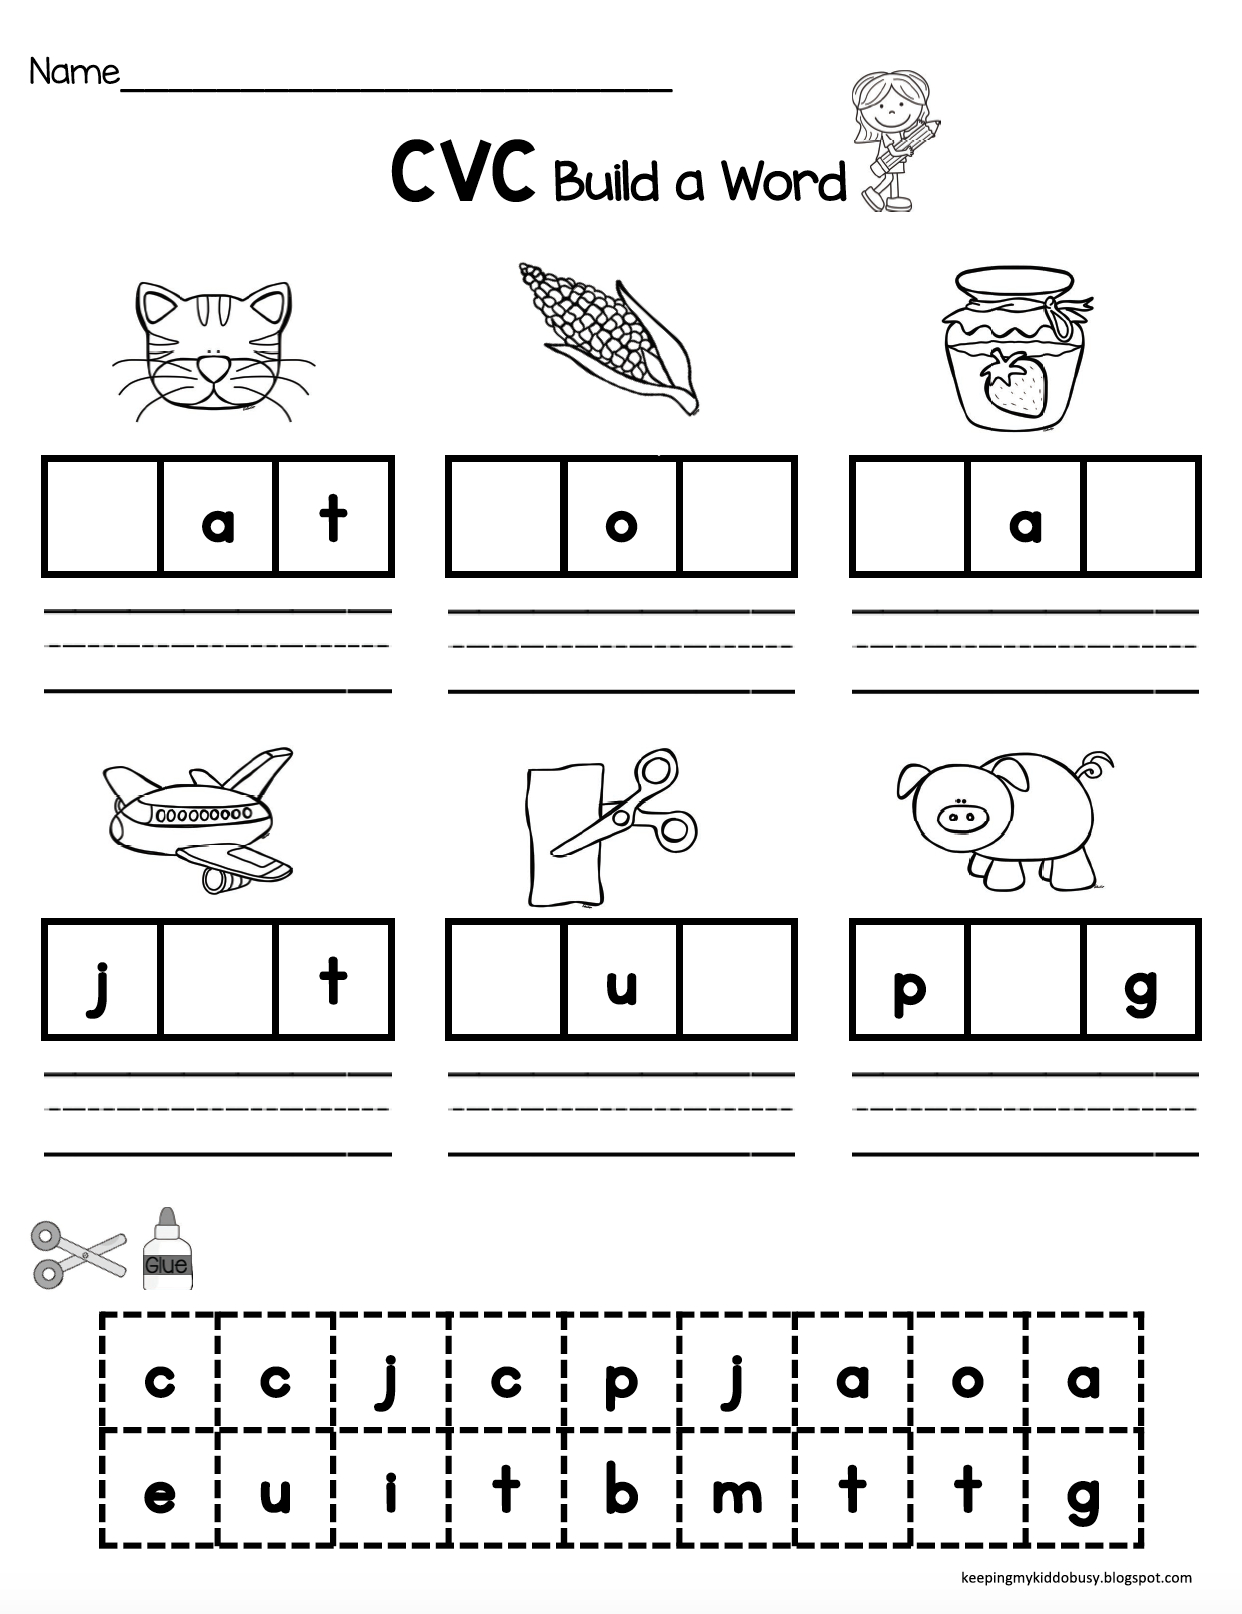 Cvc Words | Cvc Words | Cvc Words, Kindergarten Literacy, Cvc Worksheets - Free Printable Cvc Worksheets